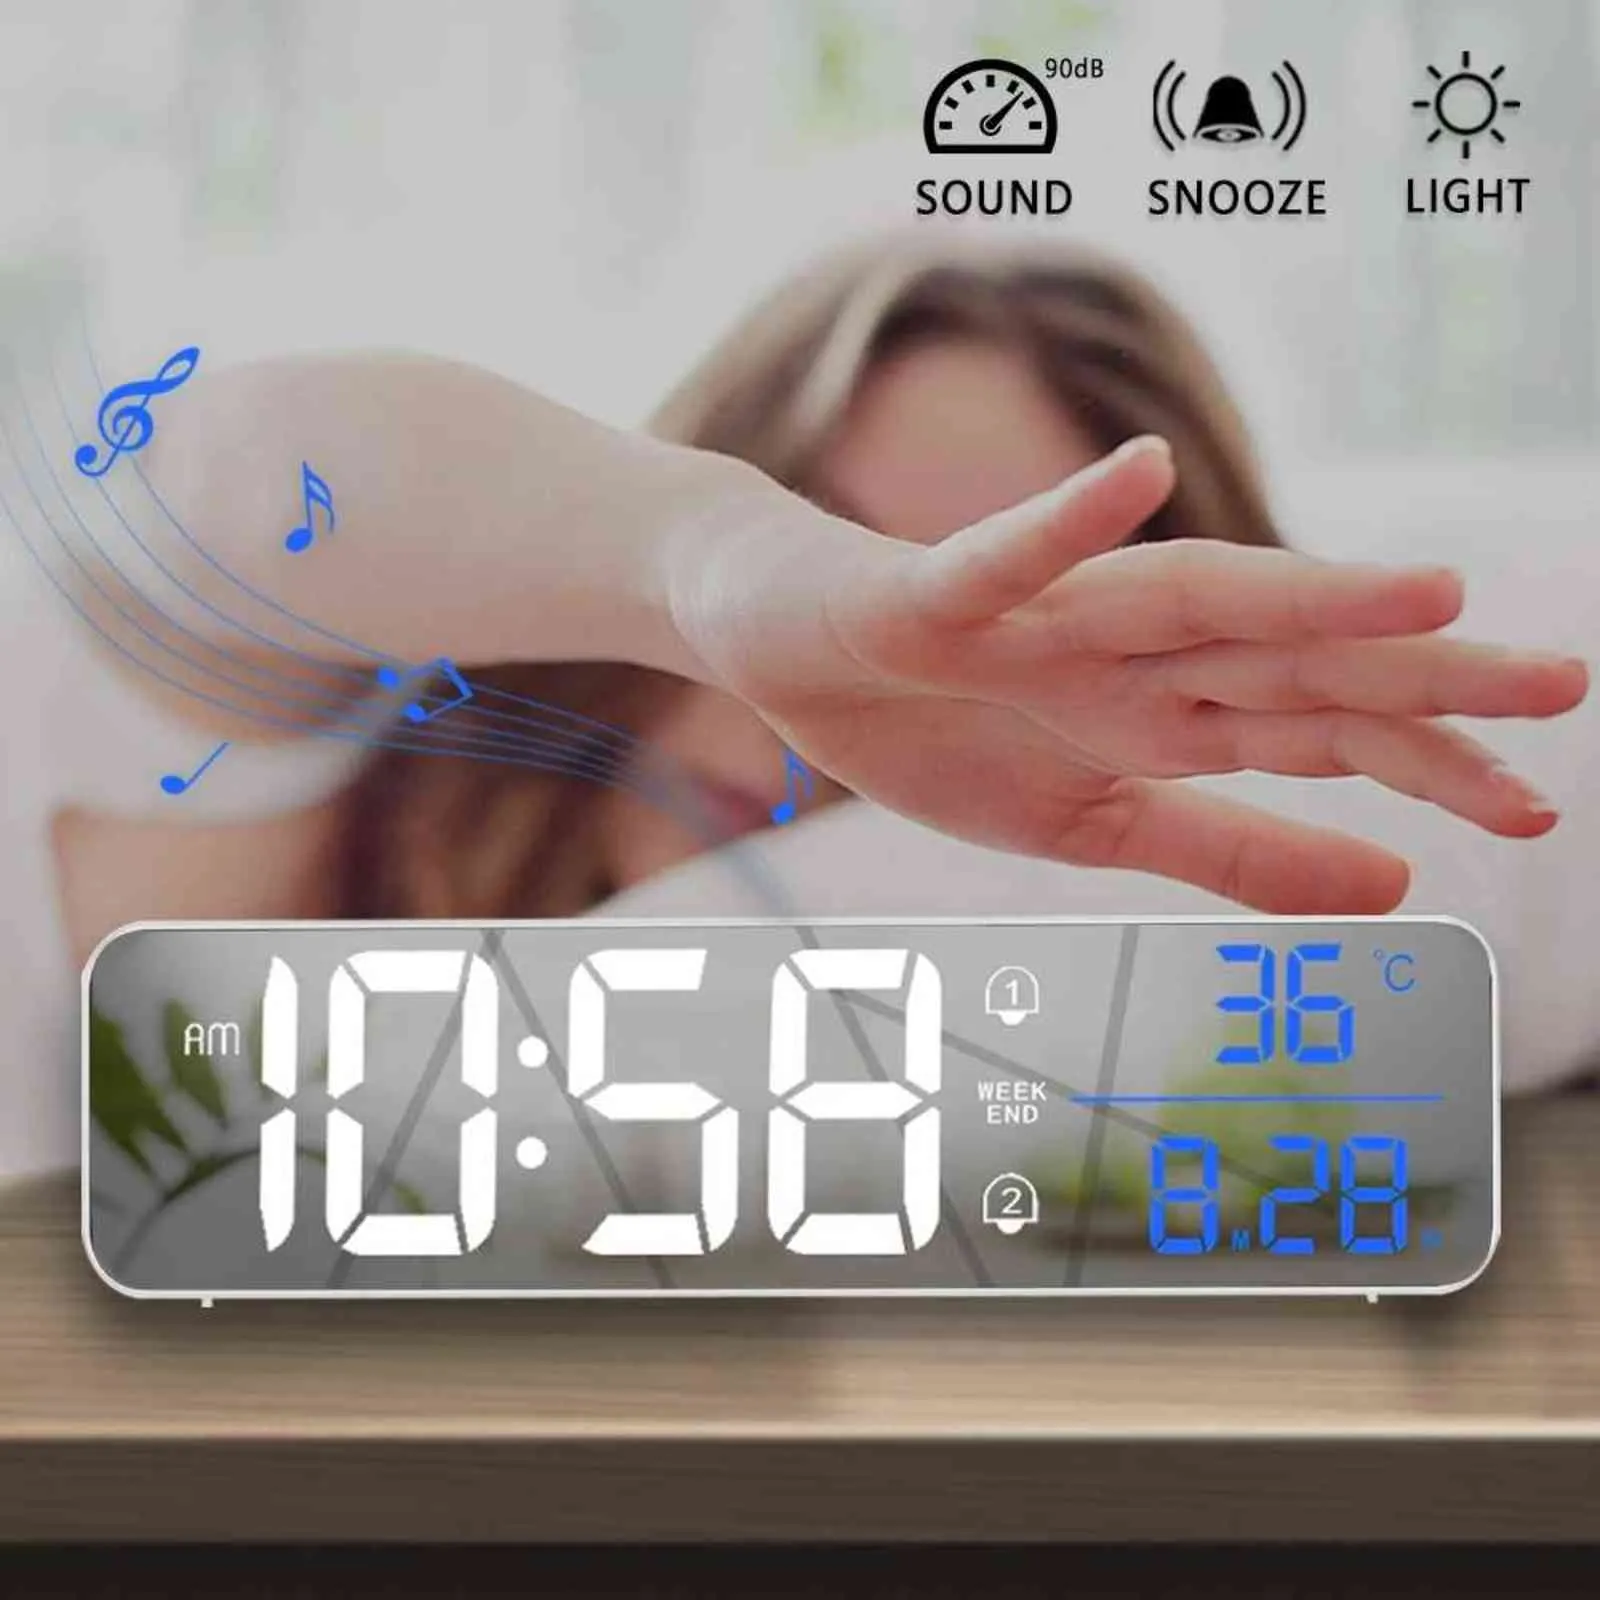 Musique LED numérique Wecker température affichage de données bureau montre-bracelet horloge maison décoration électronique montre 2000 mAh 211112